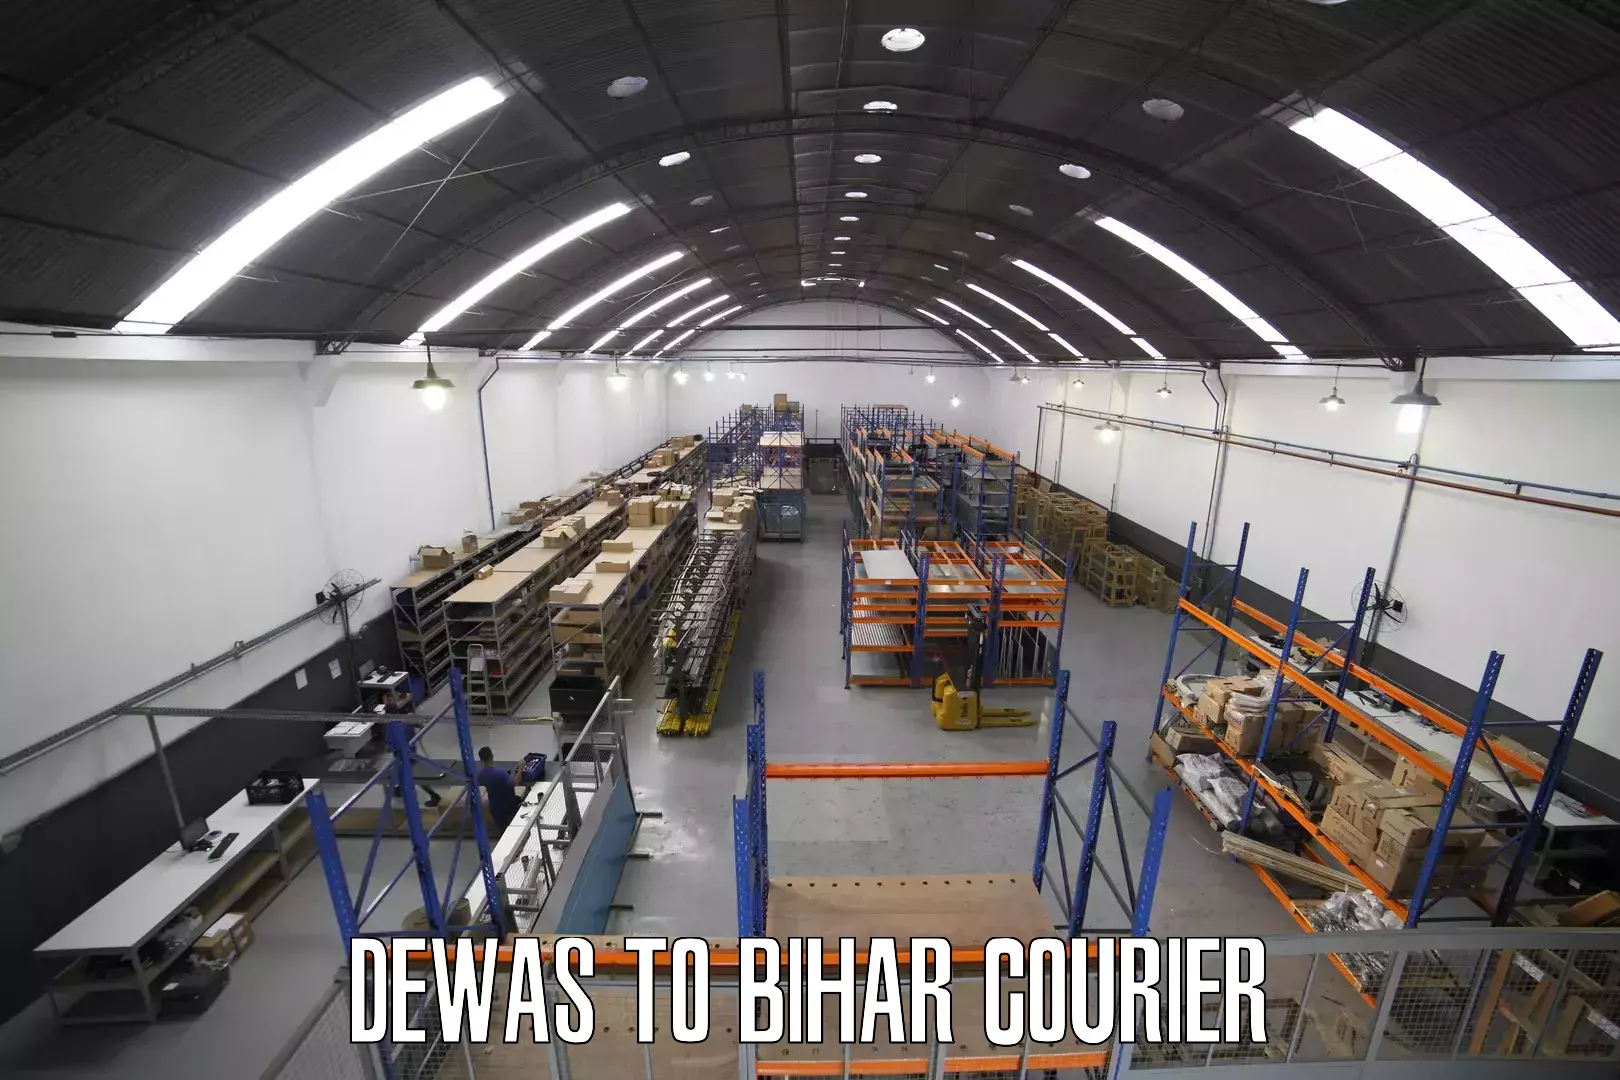 Digital courier platforms Dewas to Bihar